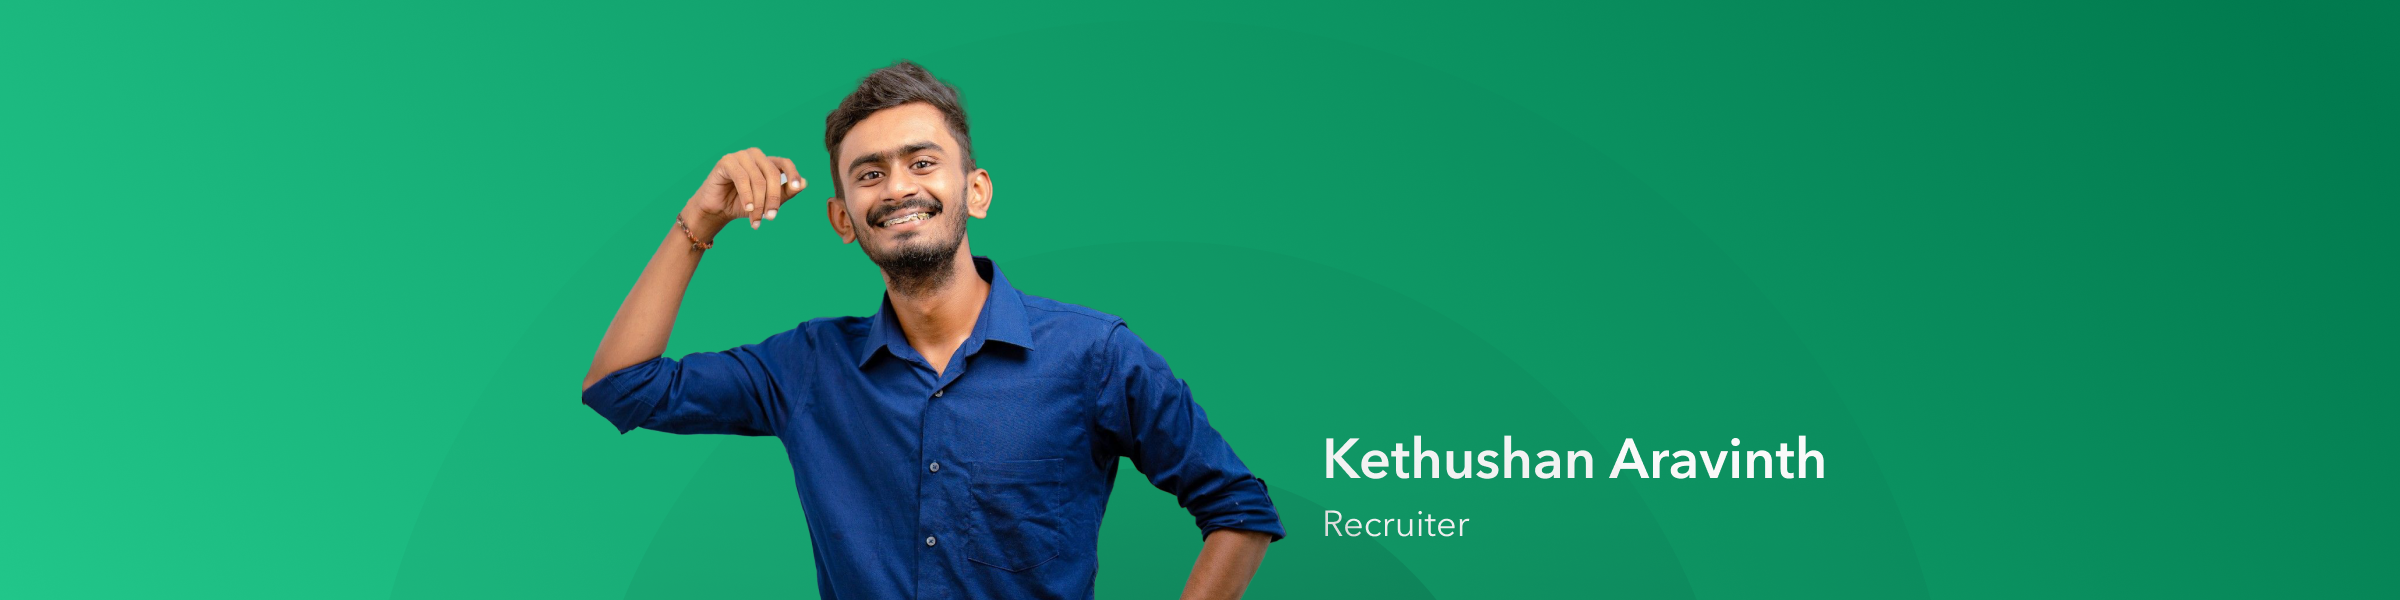 meet team openprovider: kethushan